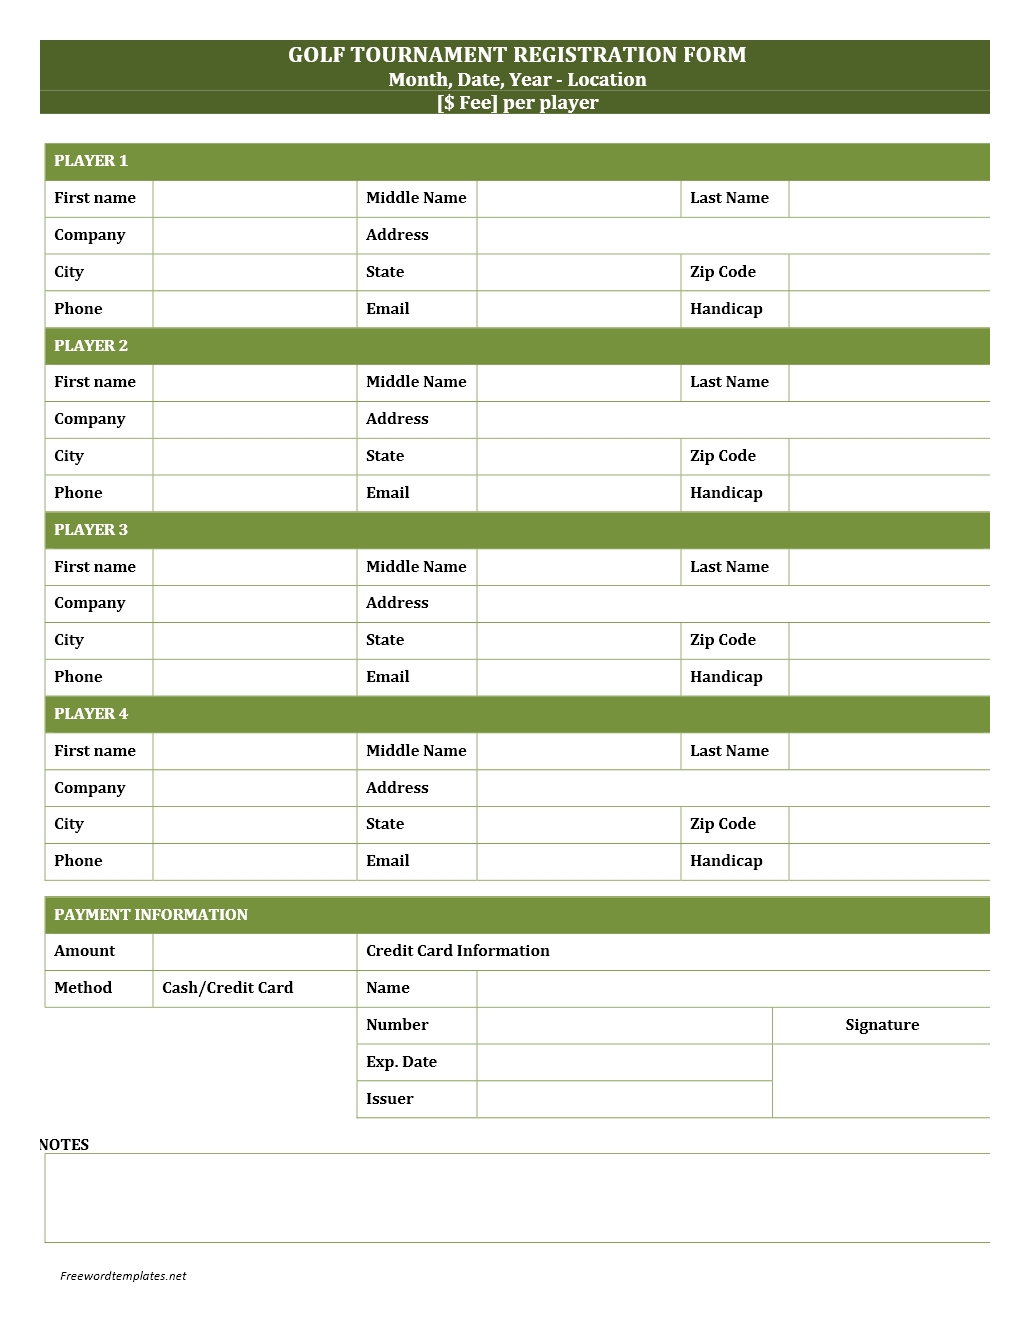 golf-tournament-registration-form-template-amulette